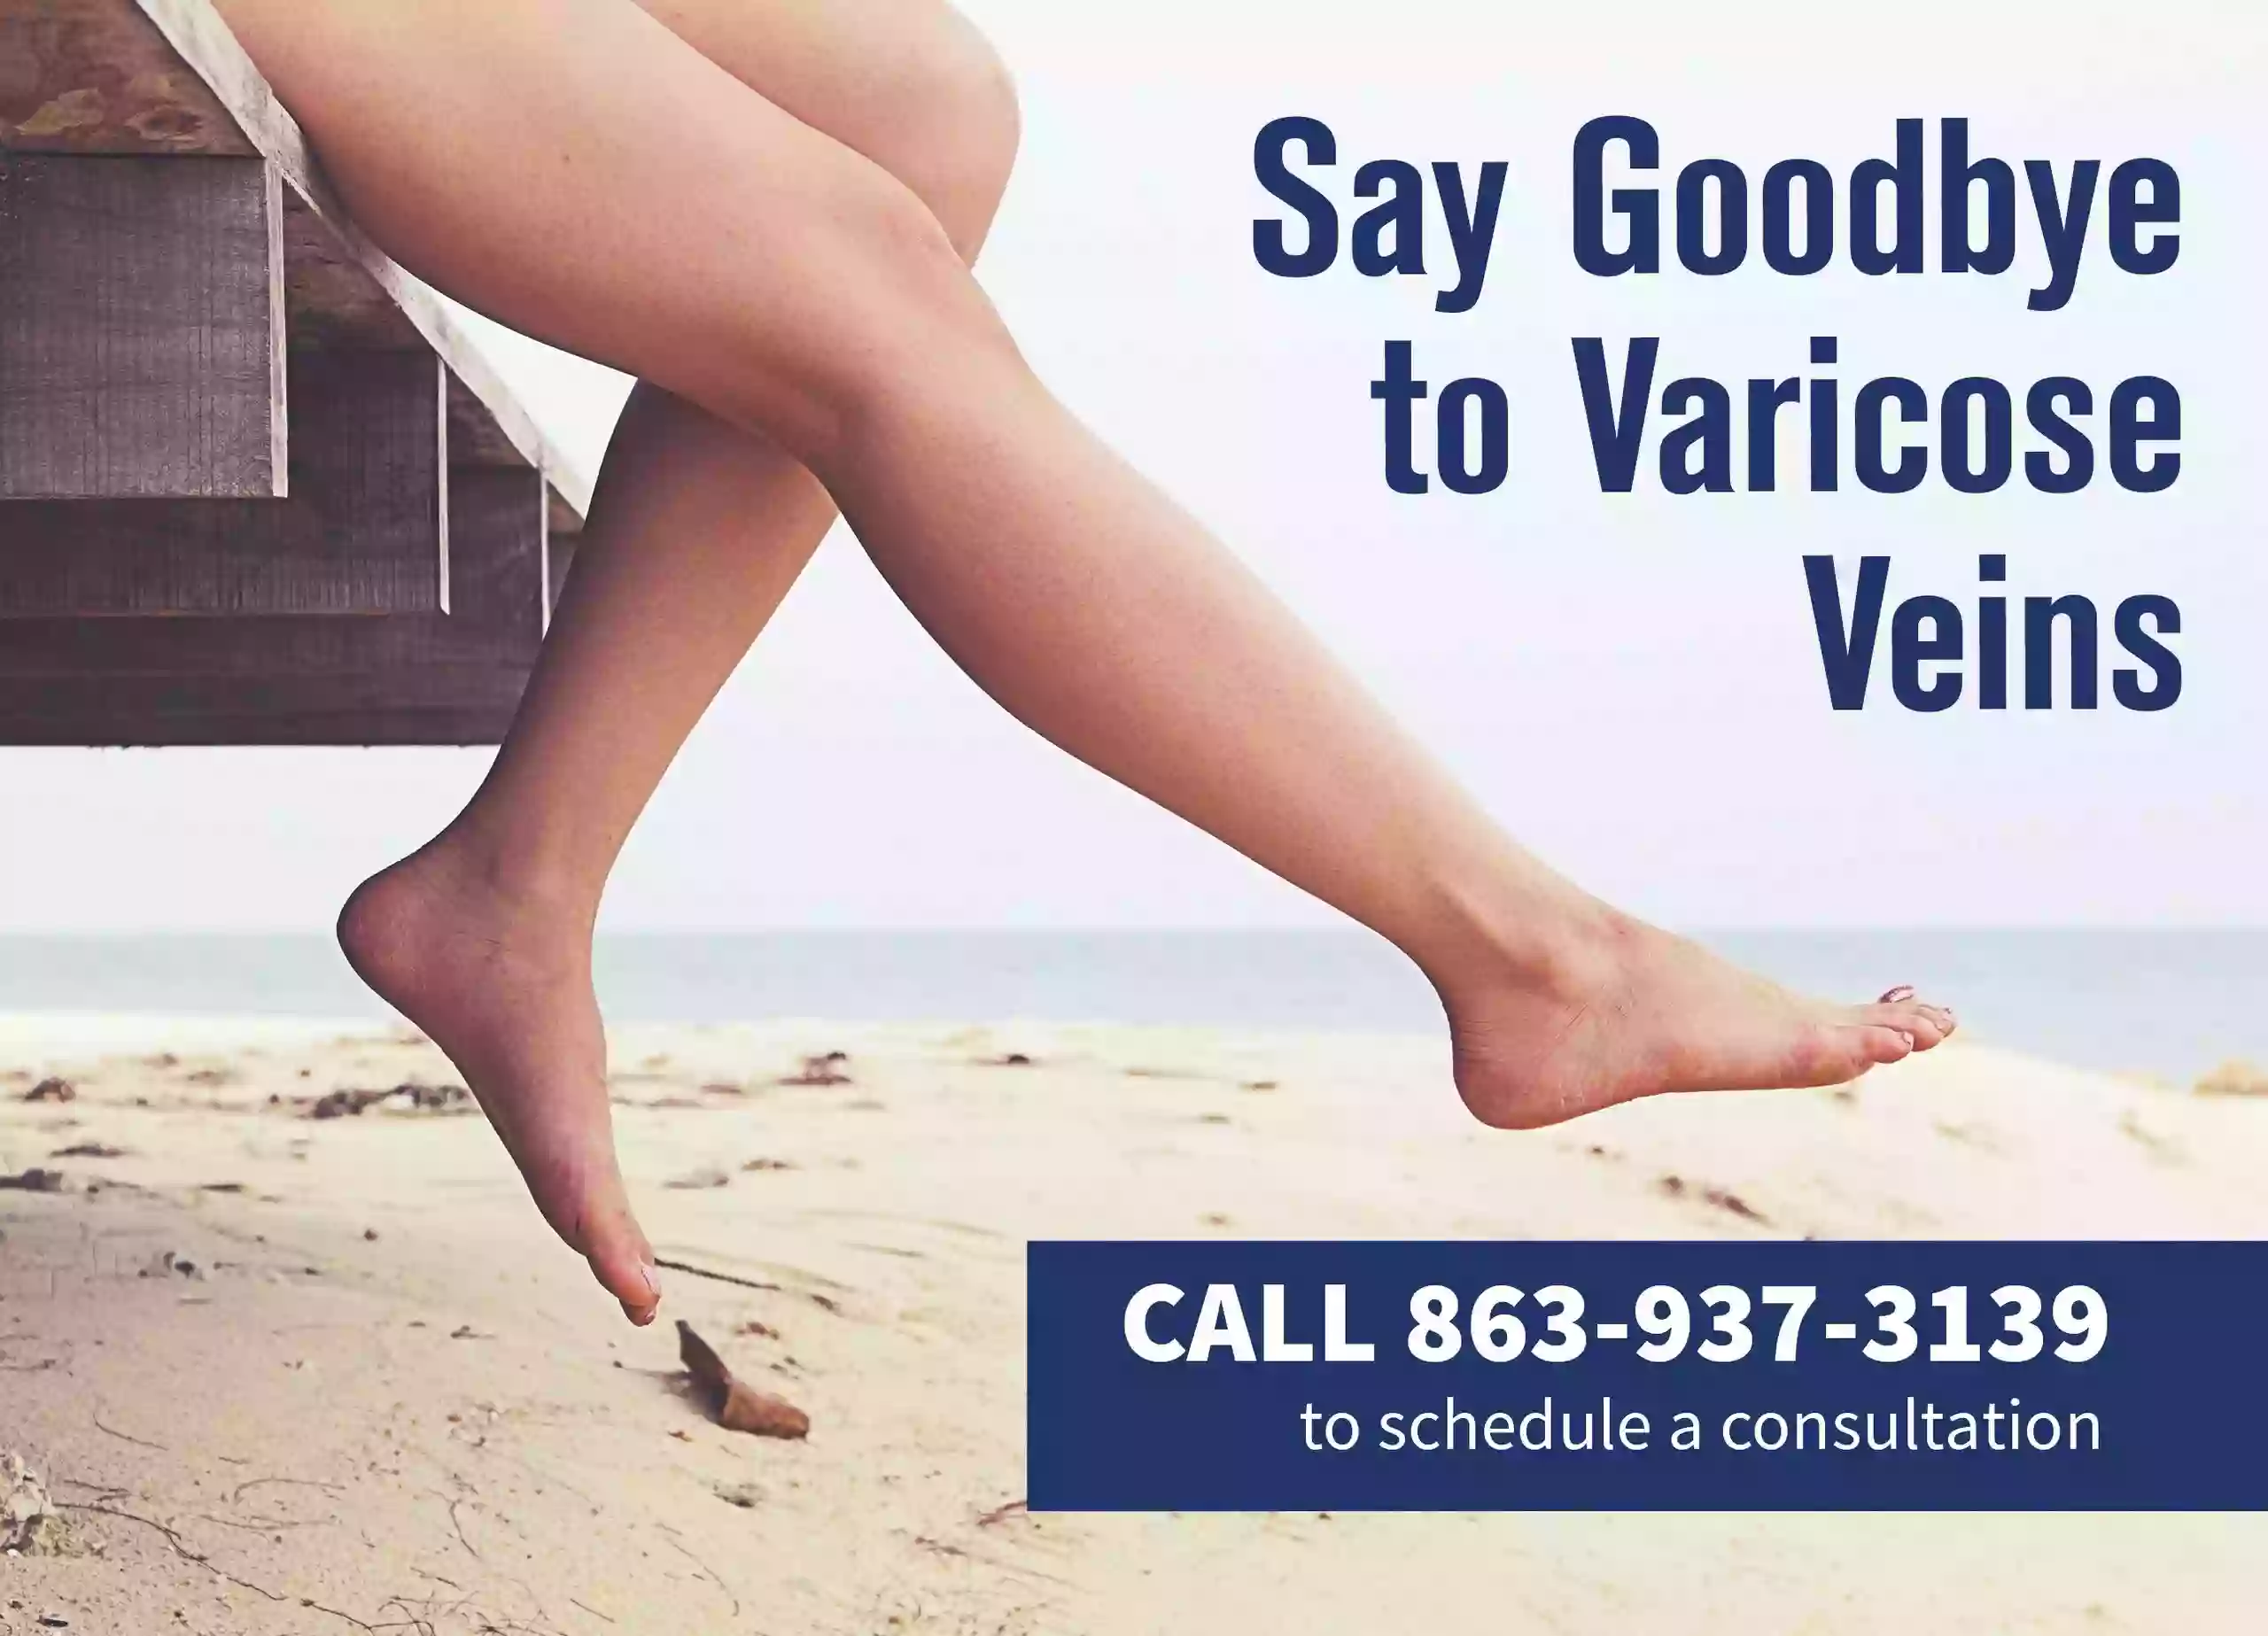 Vein and Vascular Experts, Dr. Gus De Jesus